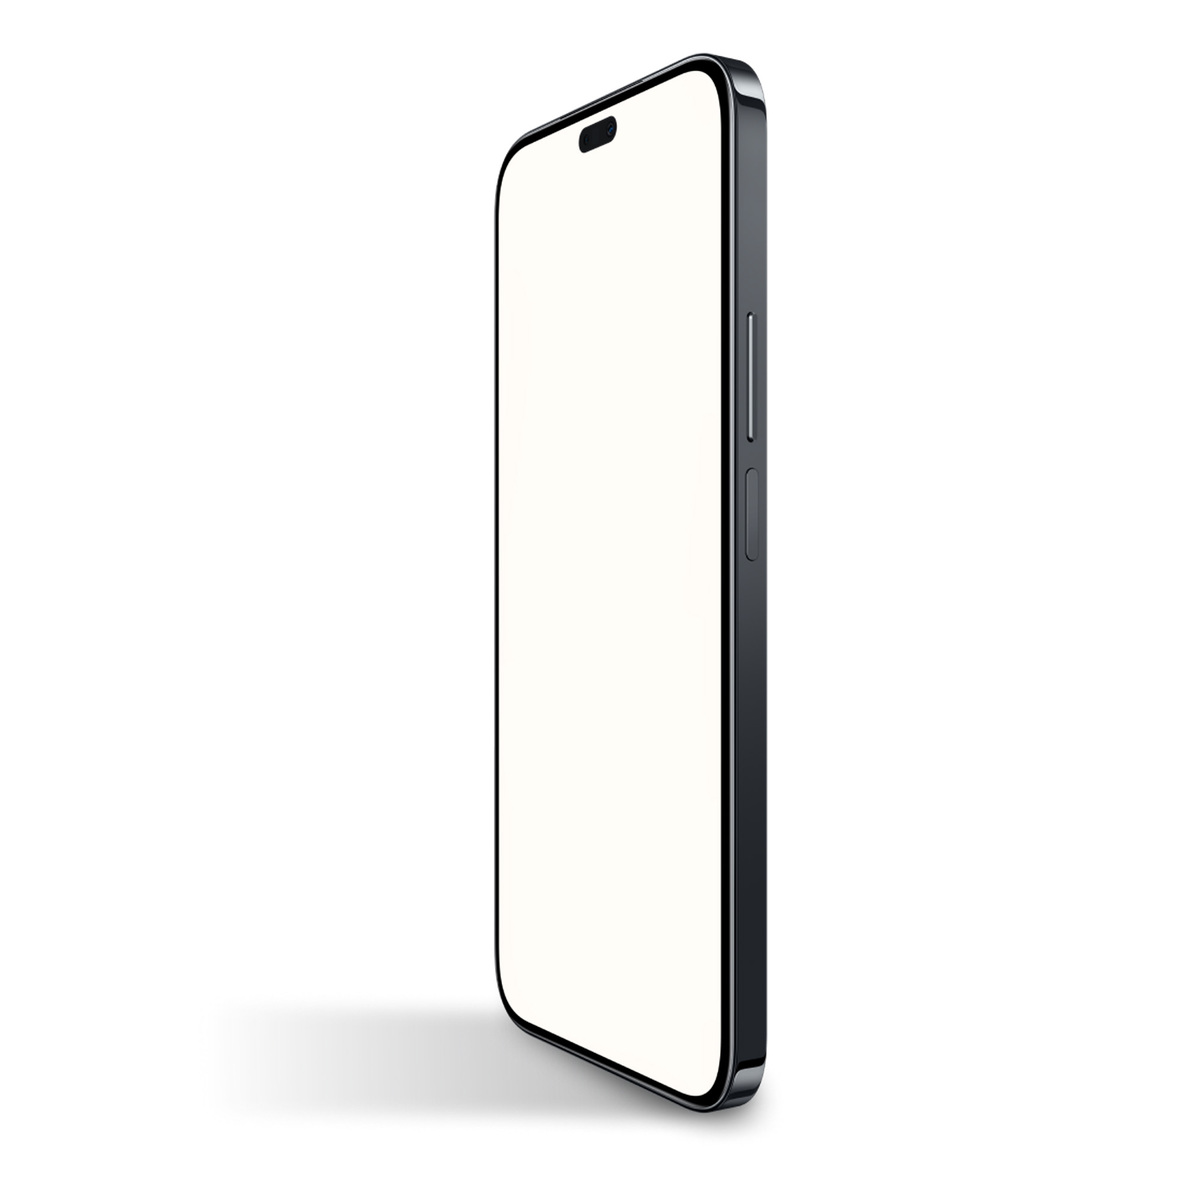 هونر X8b هاتف ذكي 4G ثنائي النواة، 8 جيجابايت رام، 512 جيجابايت تخزين، أسود